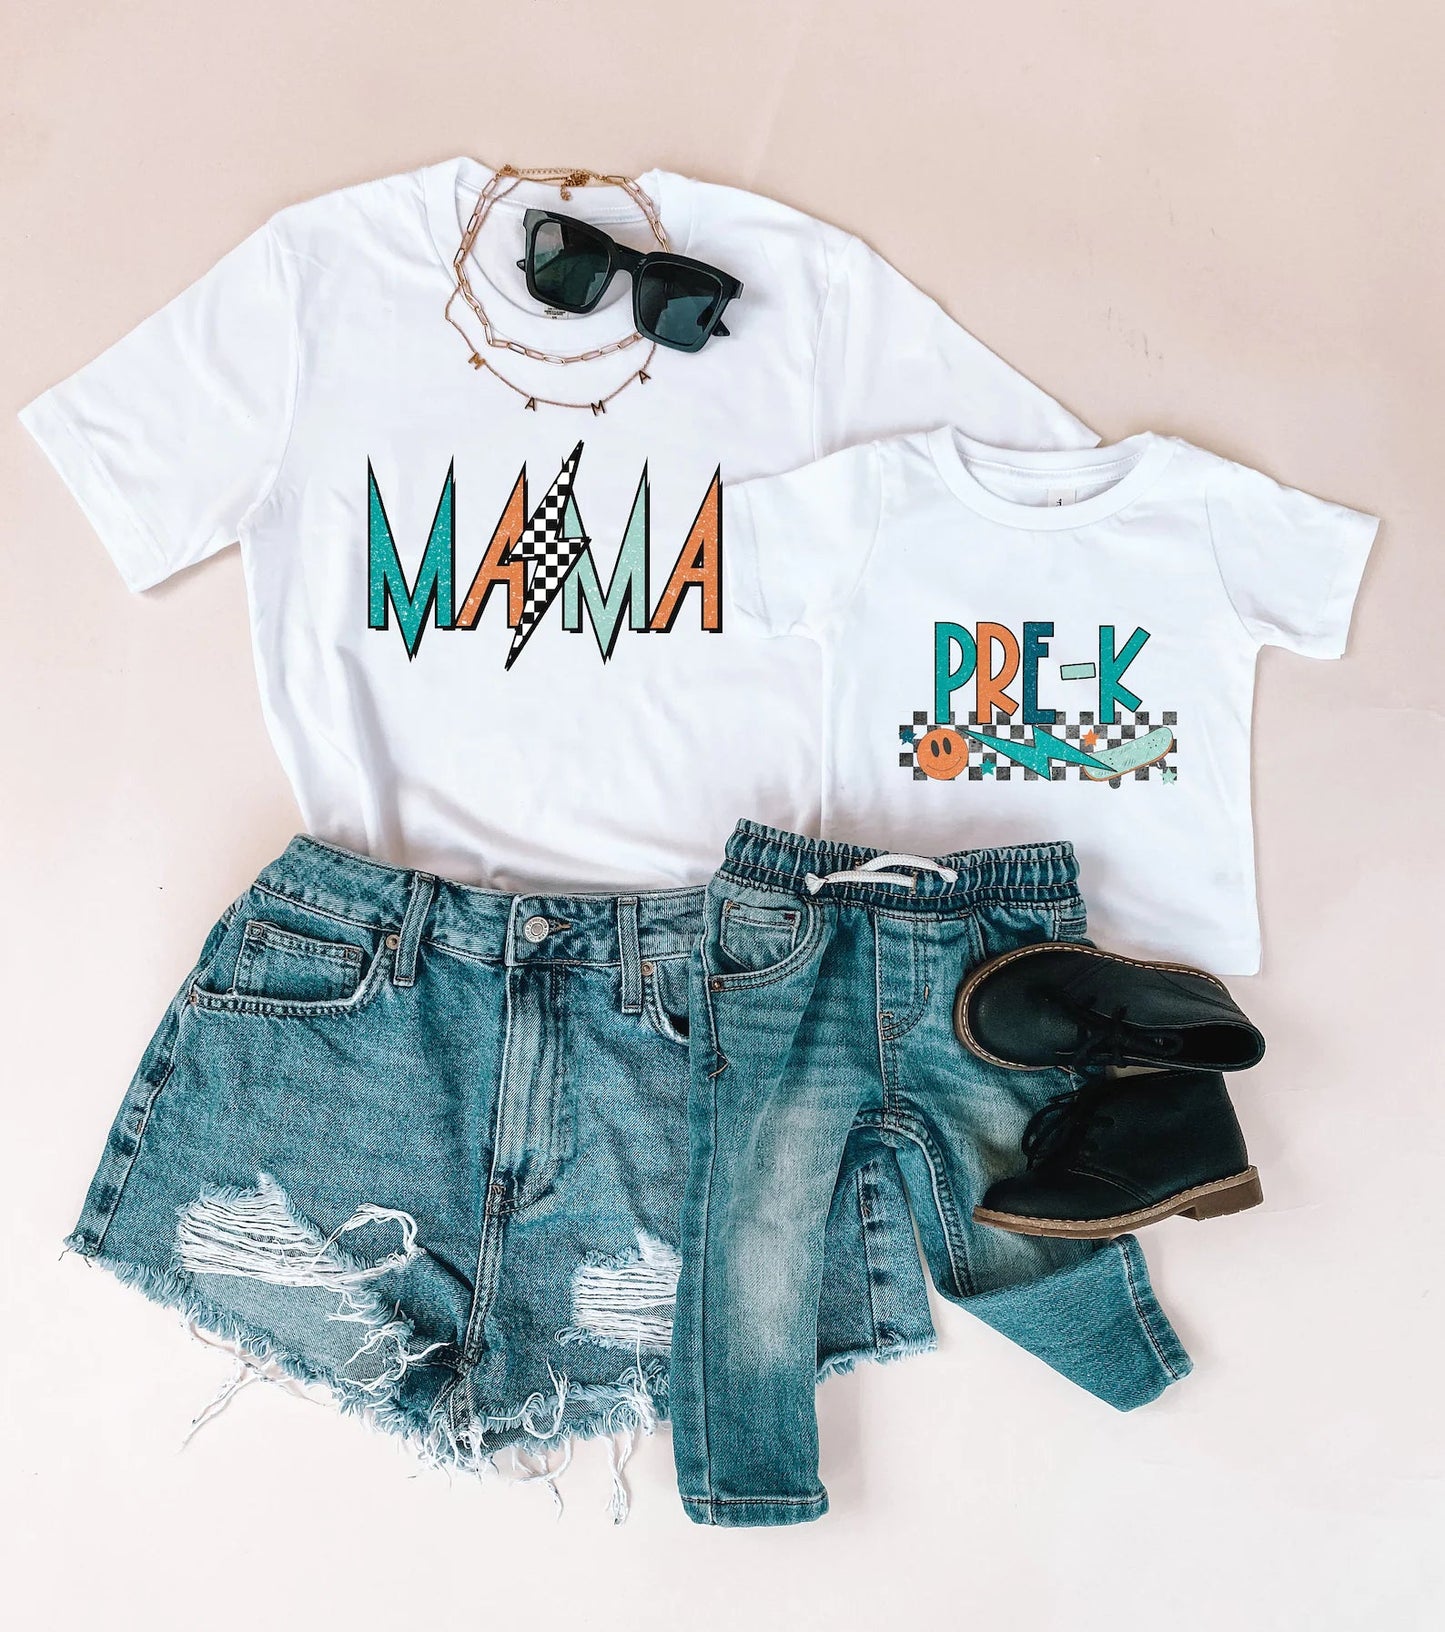 PreK Rocker Boy Mama Shirts Matching Shirts - LITTLE MIA BELLA